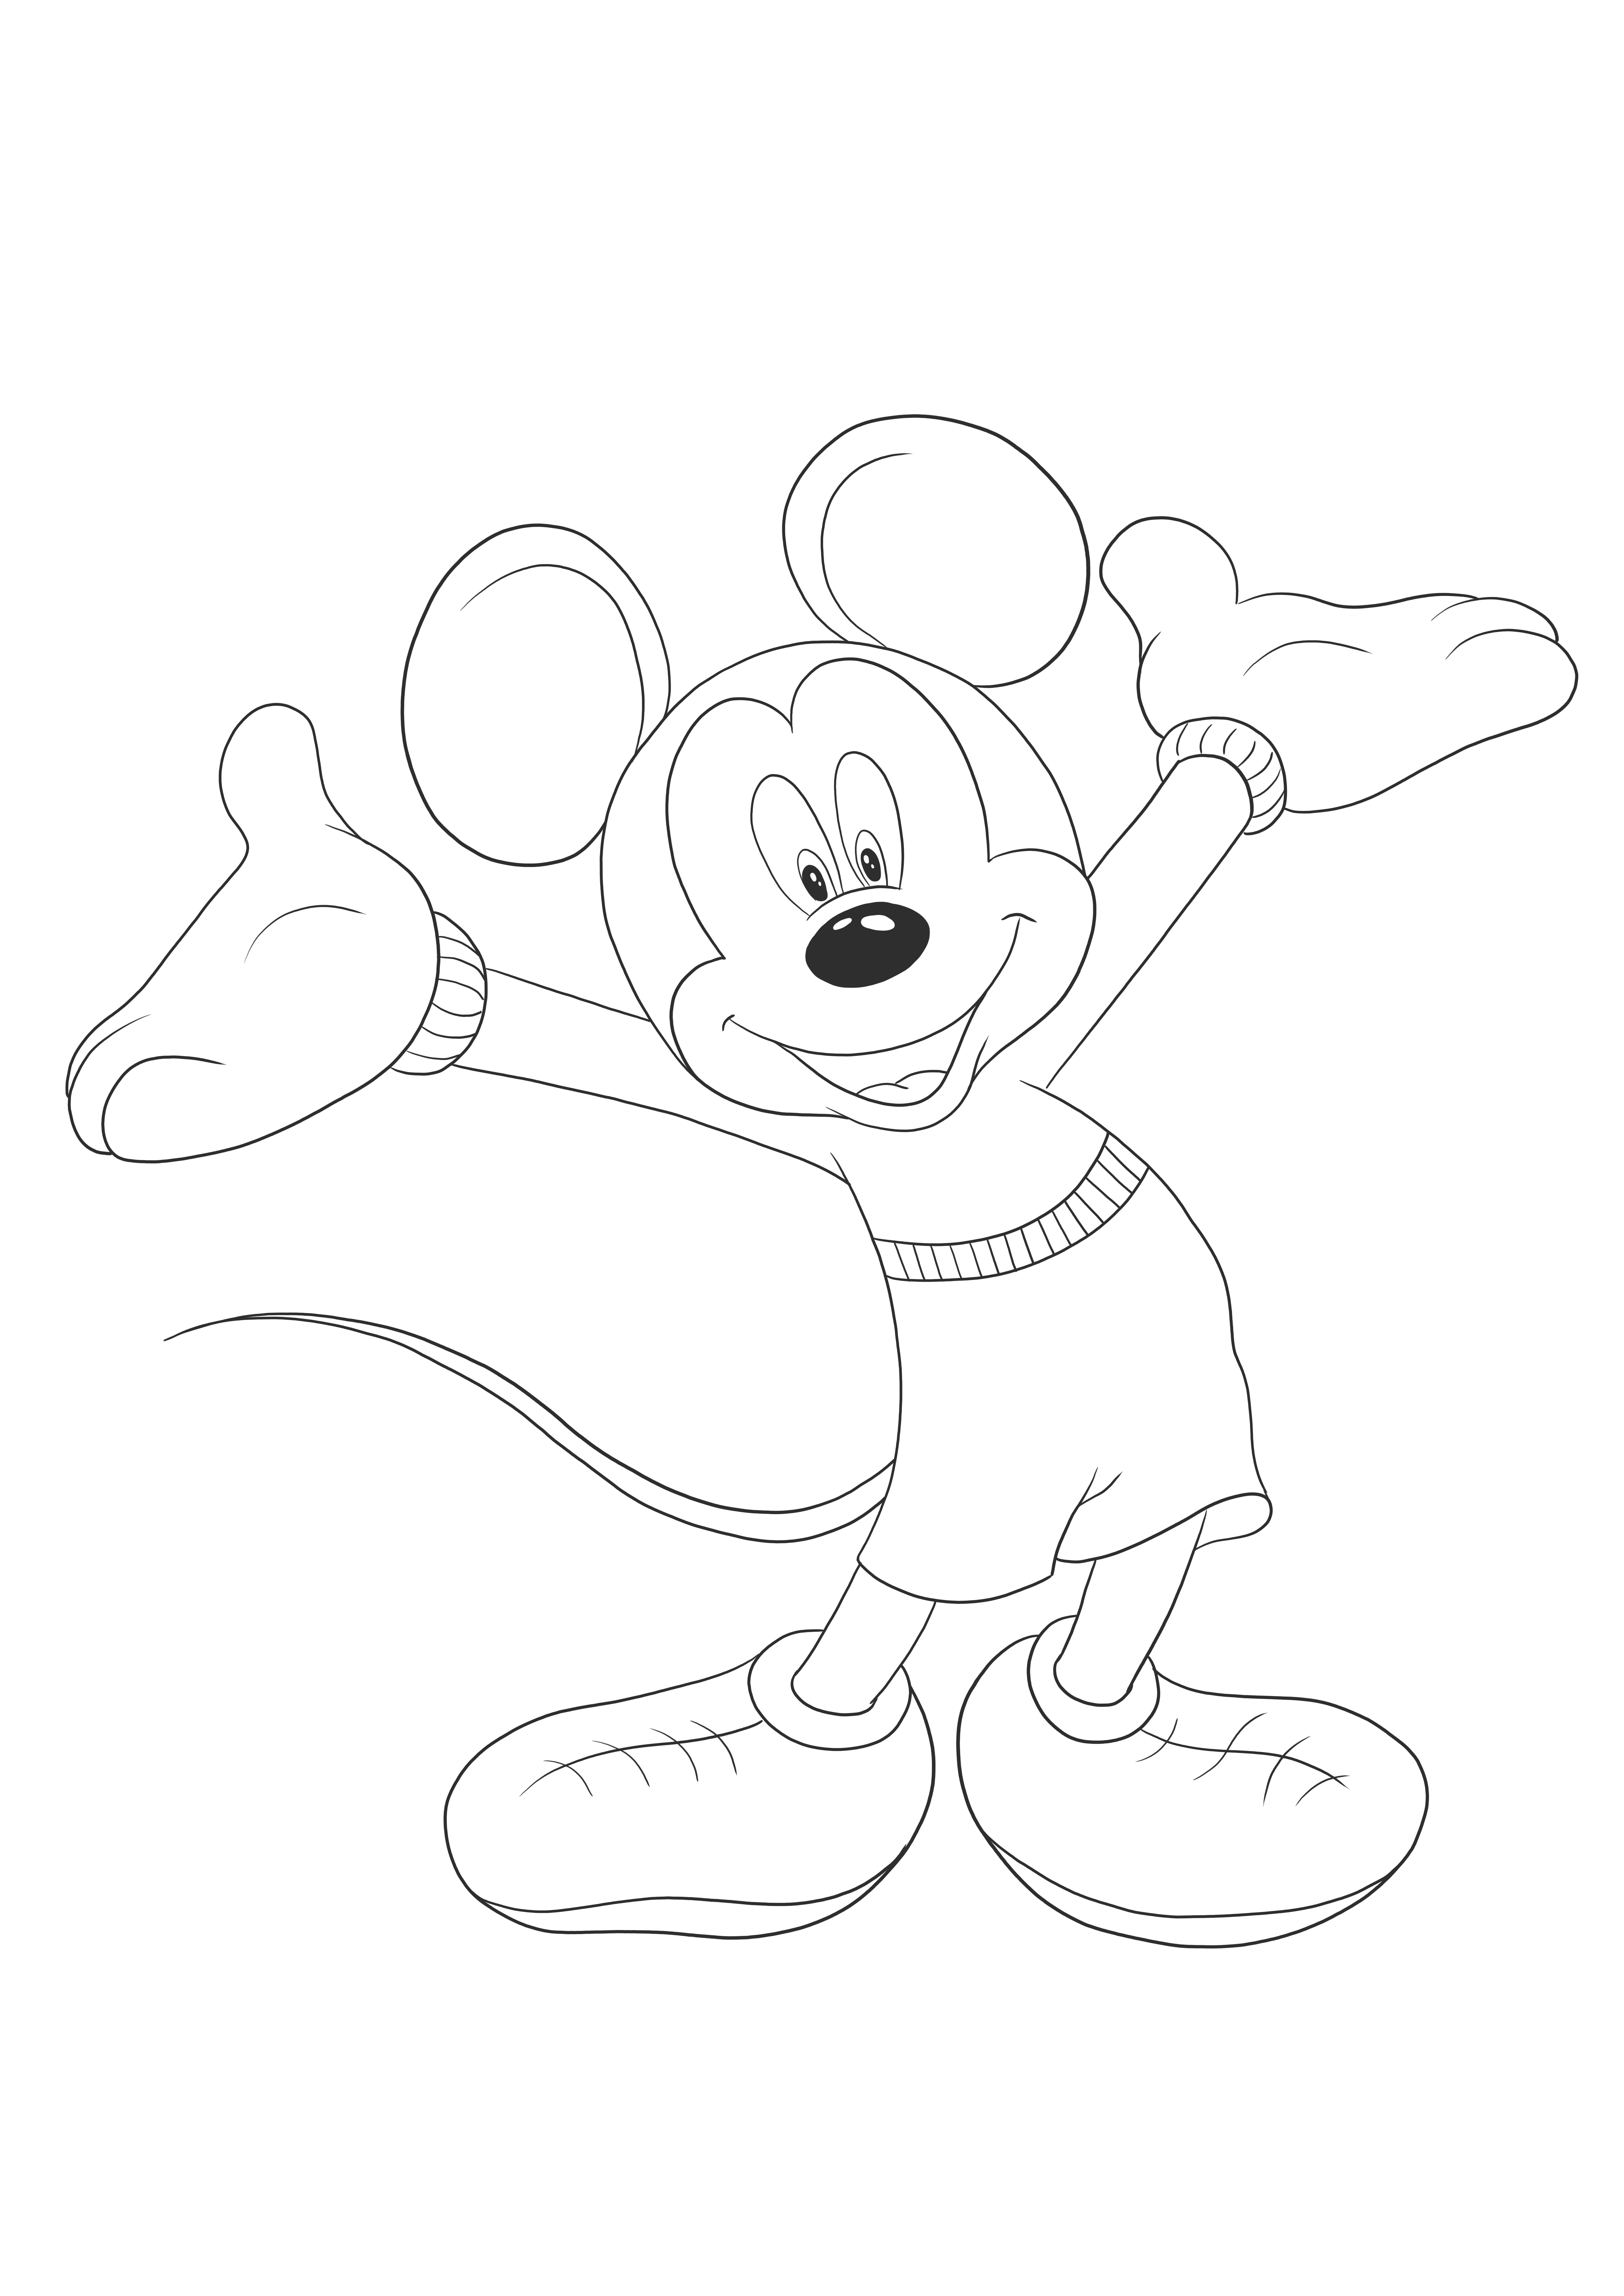 無色印刷可能になるのを待っているハッピー マイキー マウス